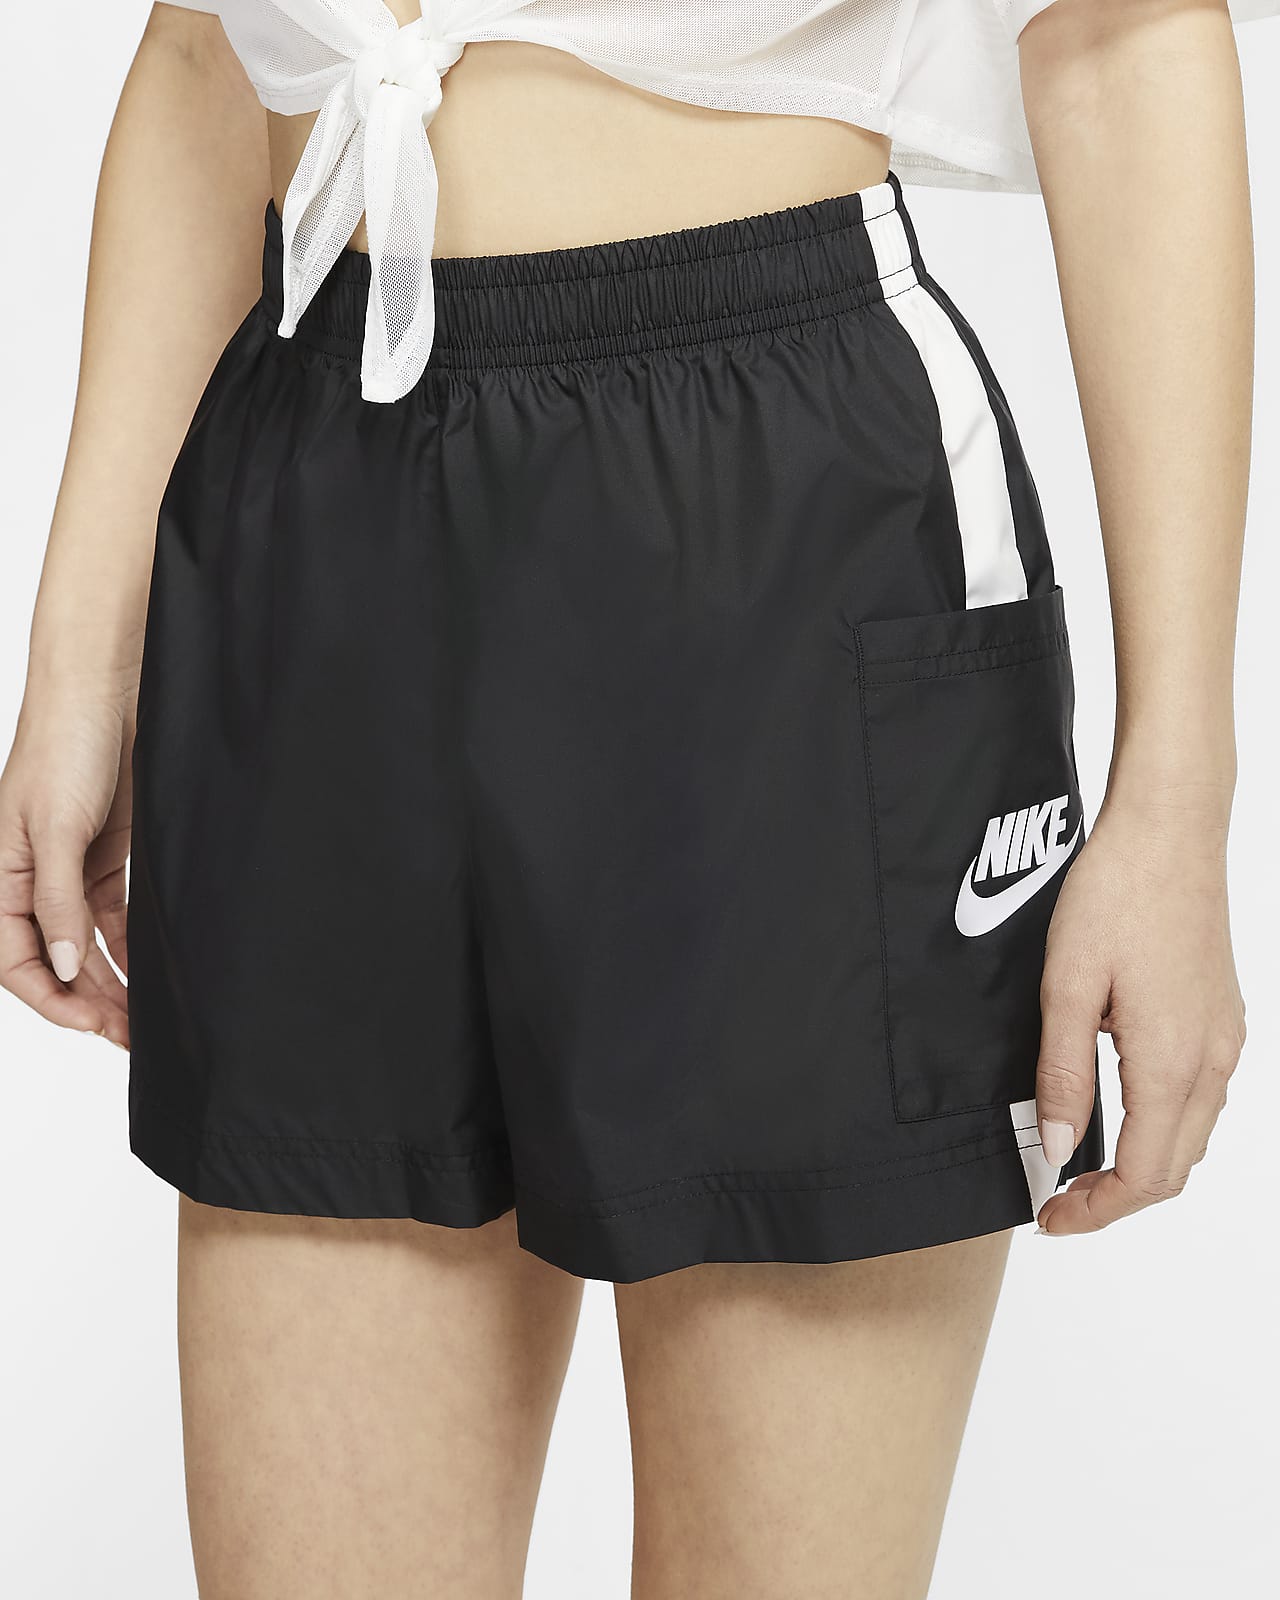 NIKE Sportswear Women's Woven Shorts